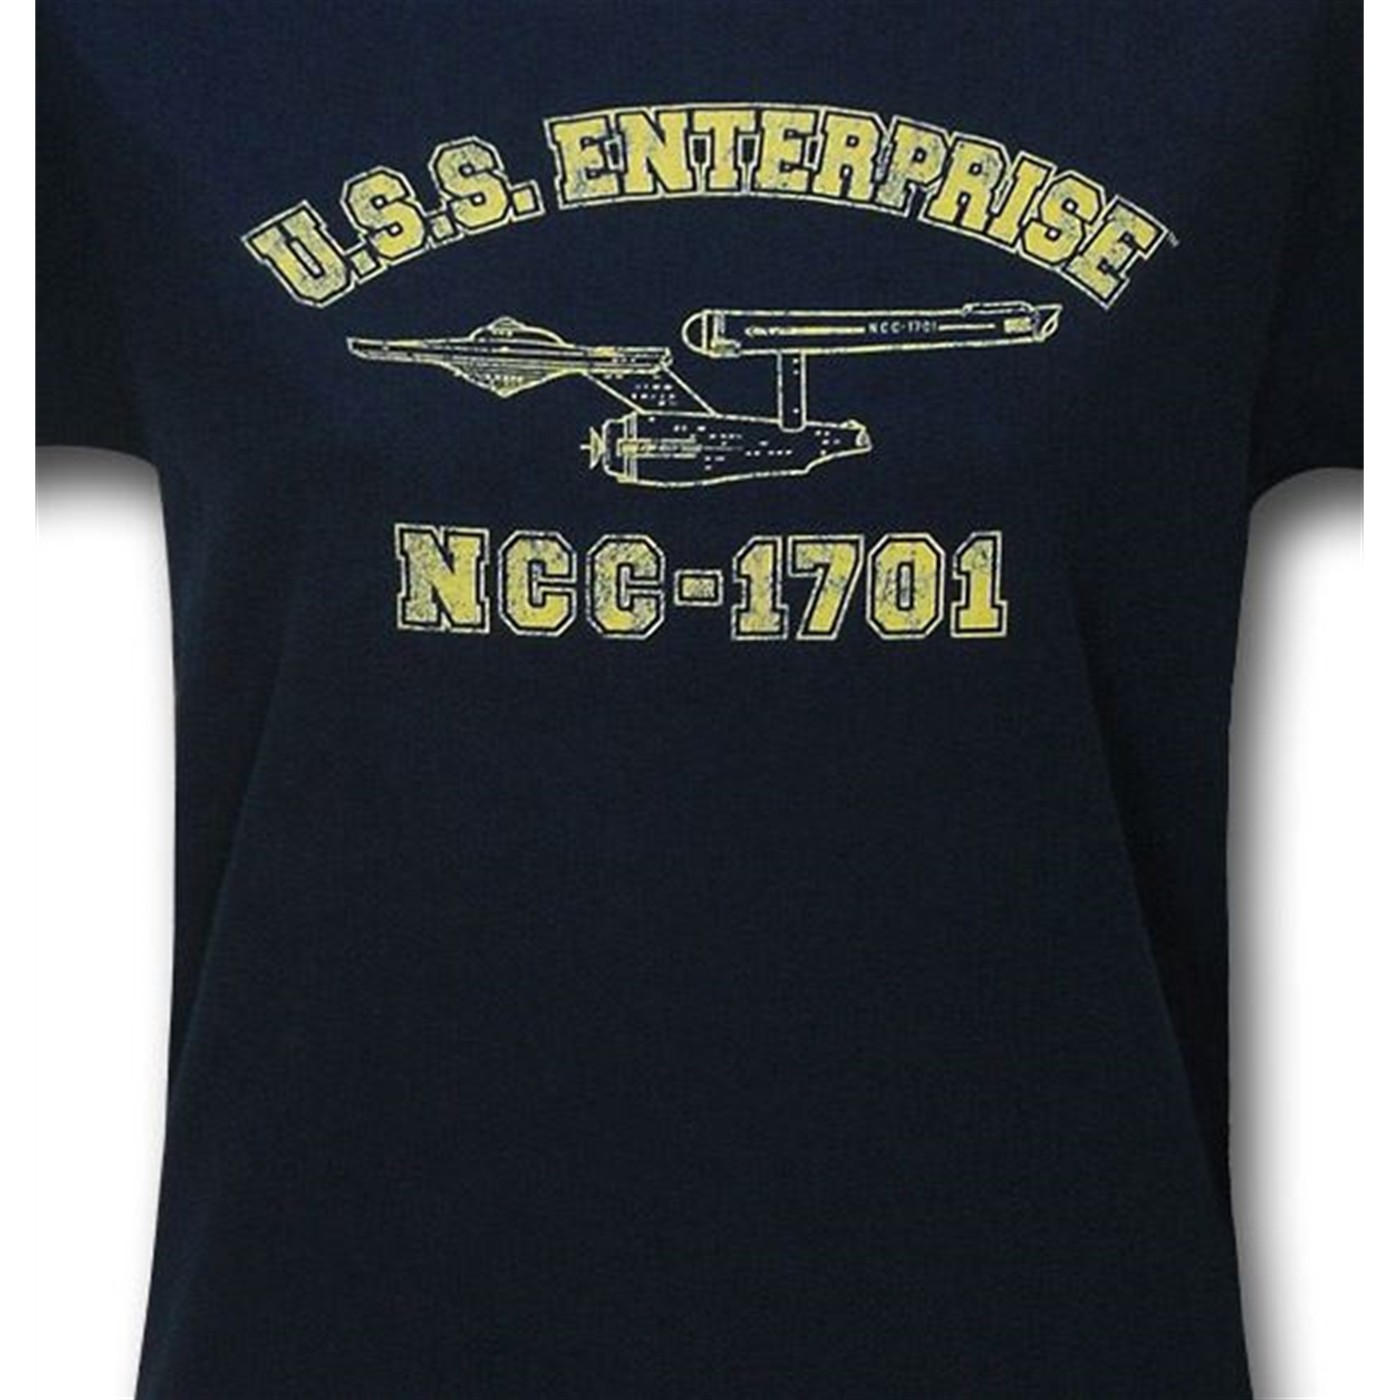 Star Trek Team Enterprise Women's T-Shirt